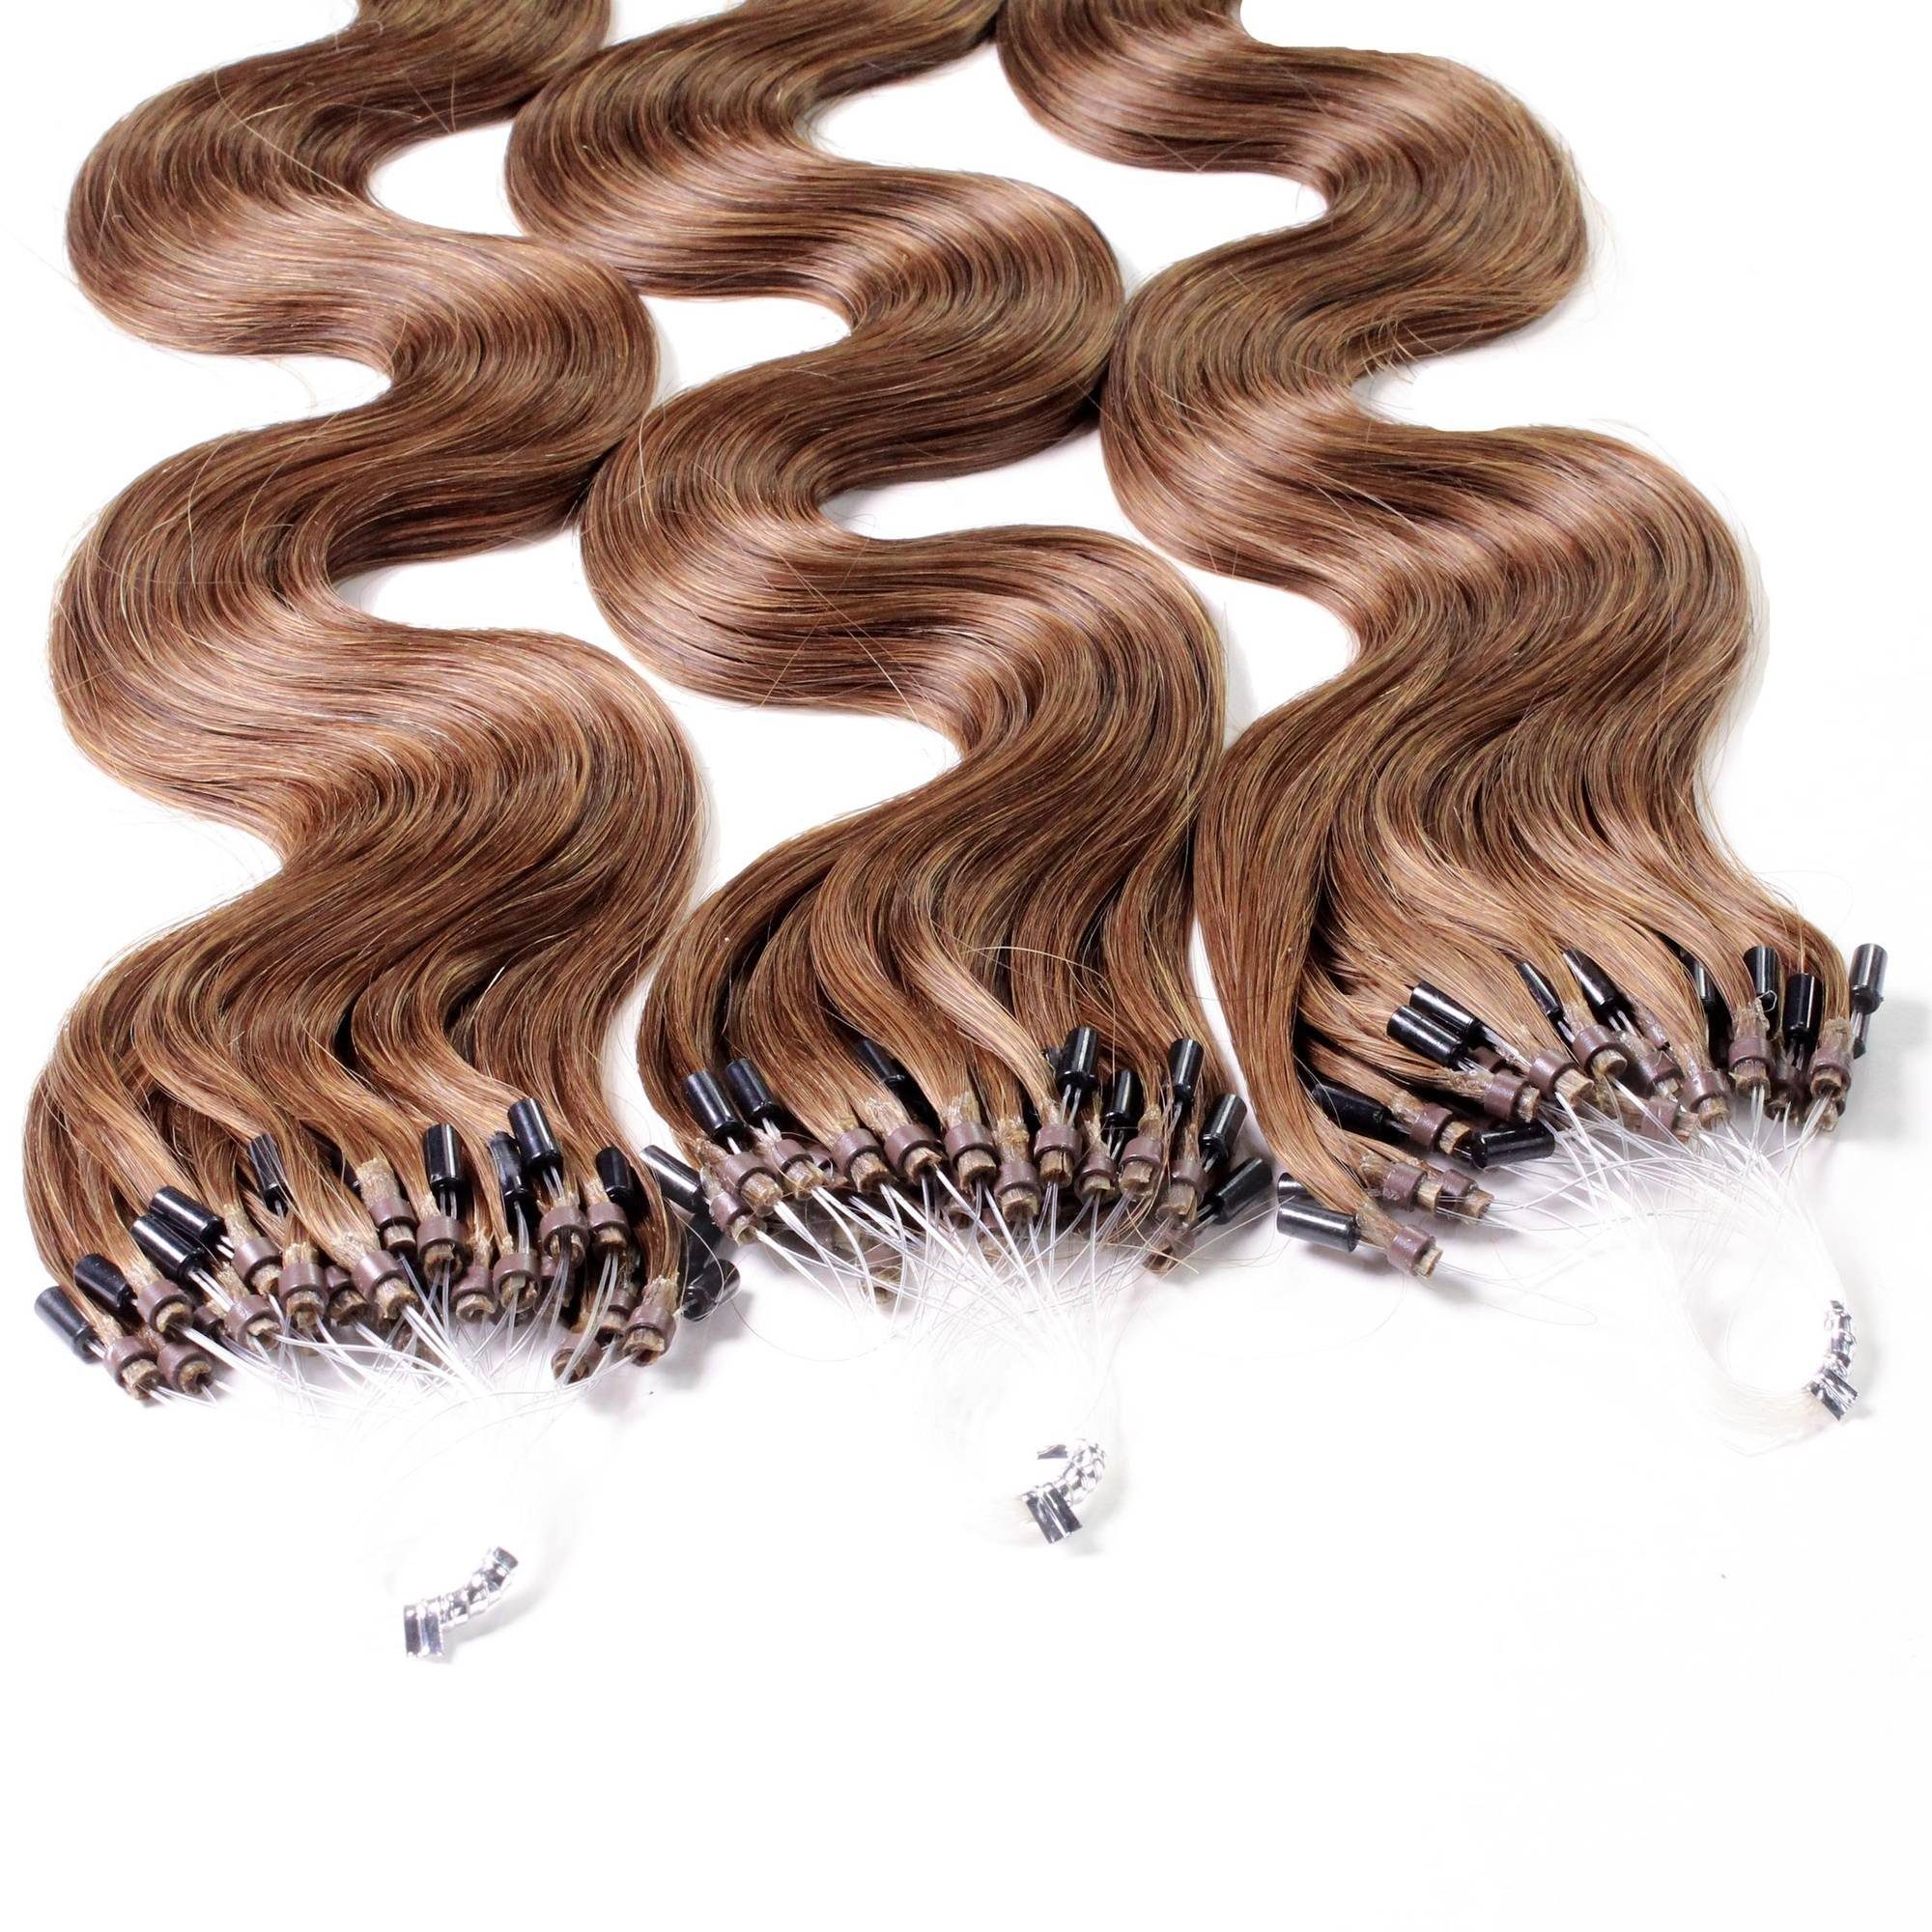 gewellt 0.5g Microring Natur-Gold hair2heart #8/03 Loops - 50cm Hellblond Echthaar-Extension